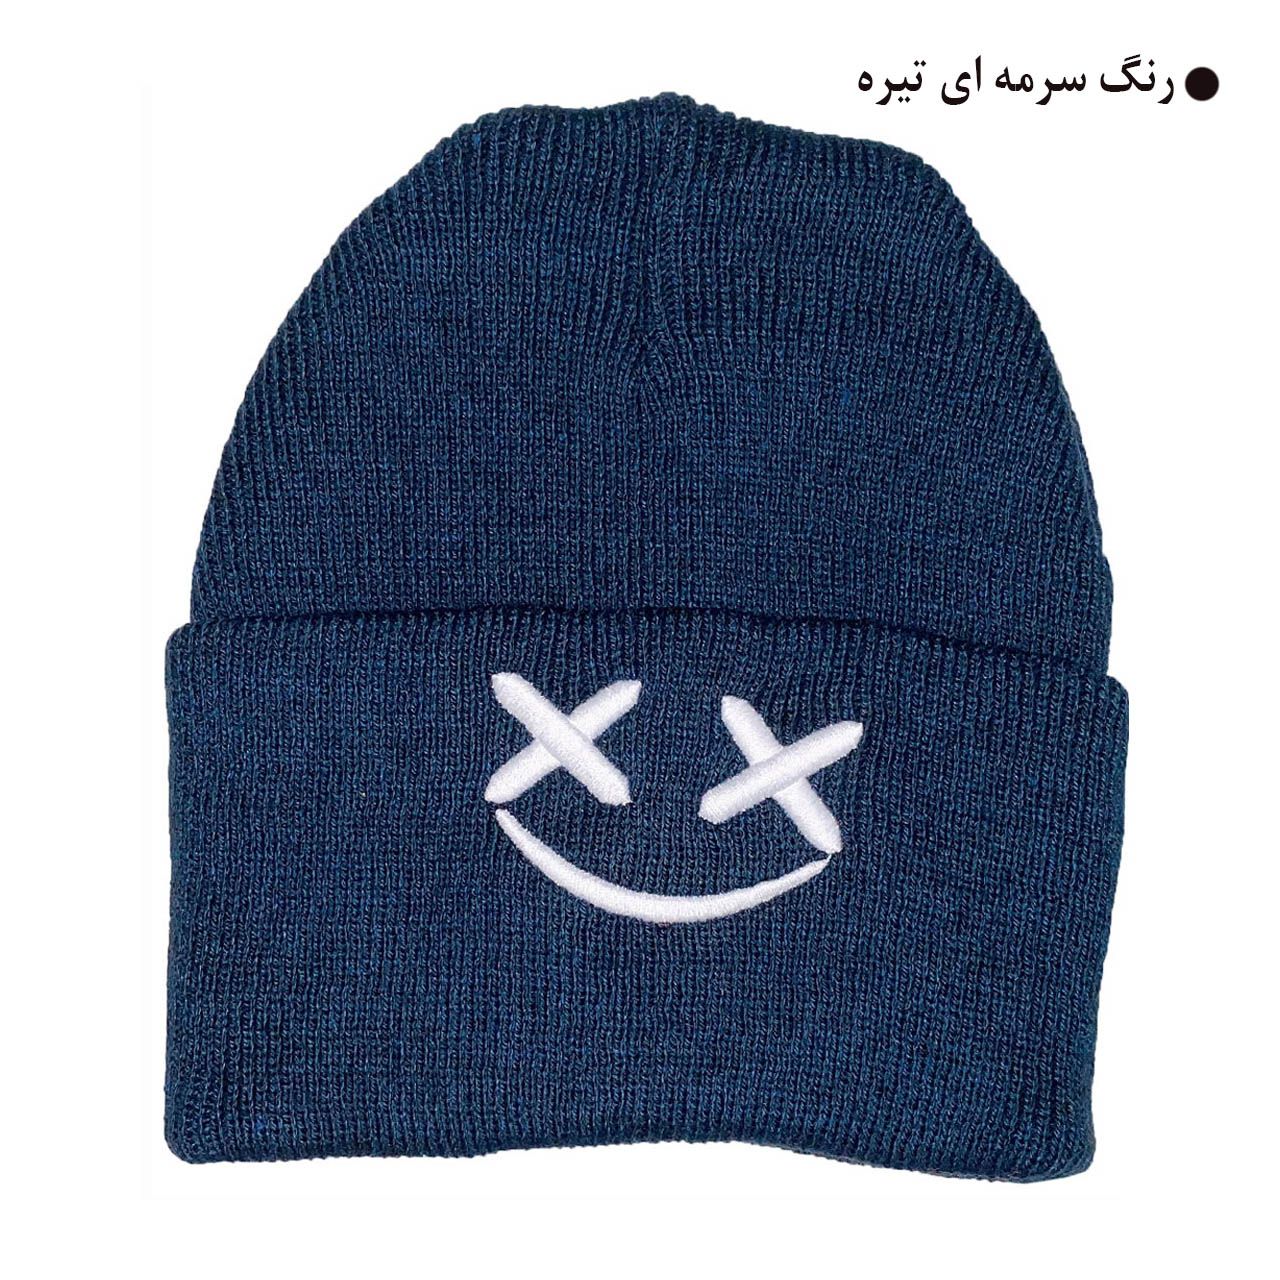 کلاه بافتنی مدل زمستانی طرح لبخند کد 121 -  - 4